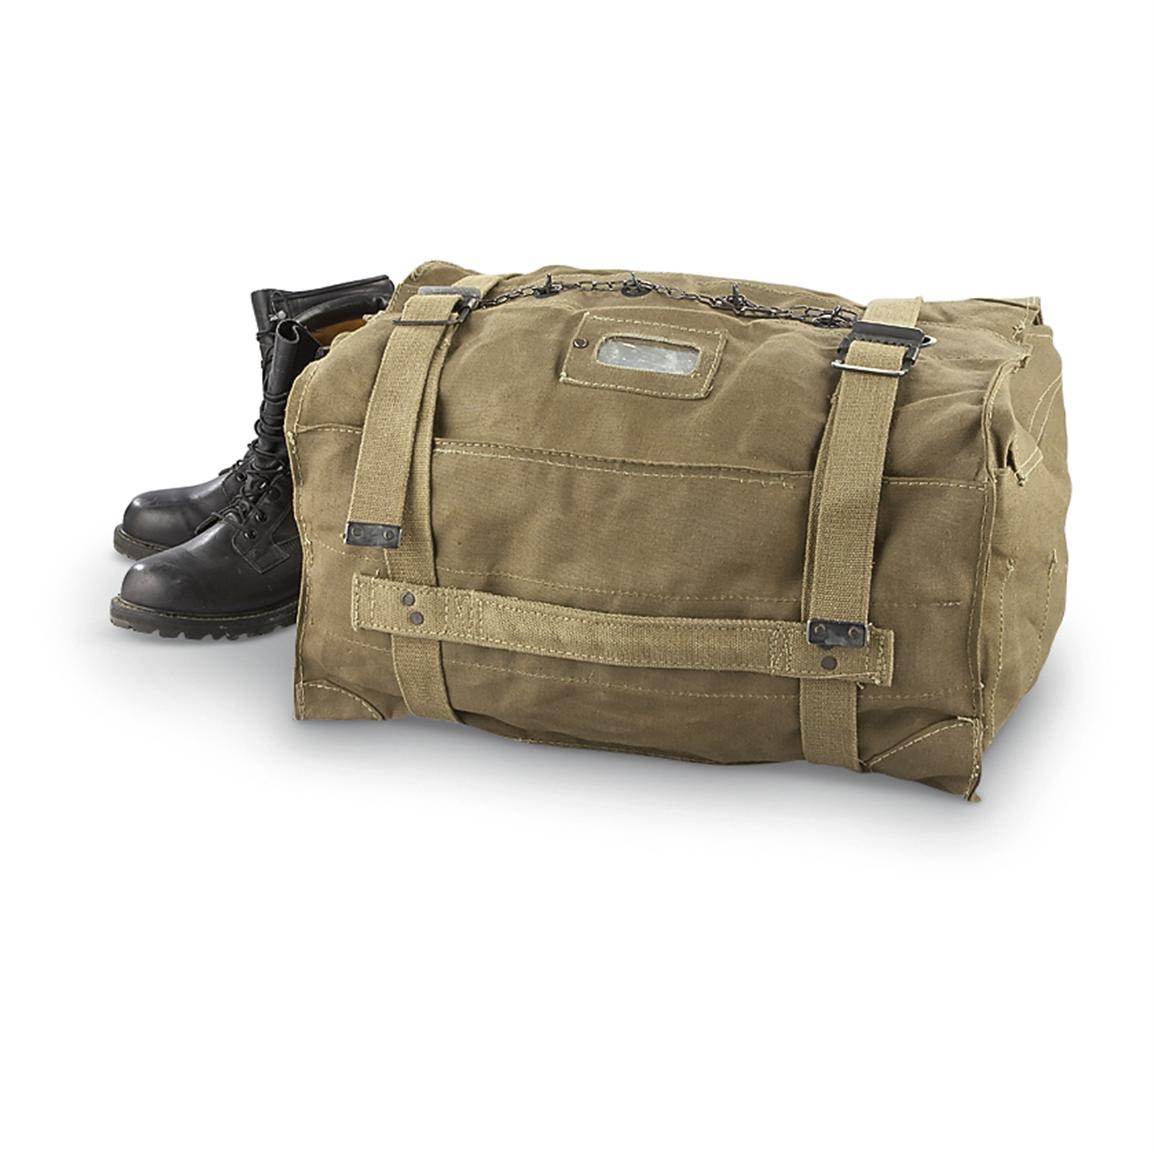 Italian Military Surplus Kit Bag, Used